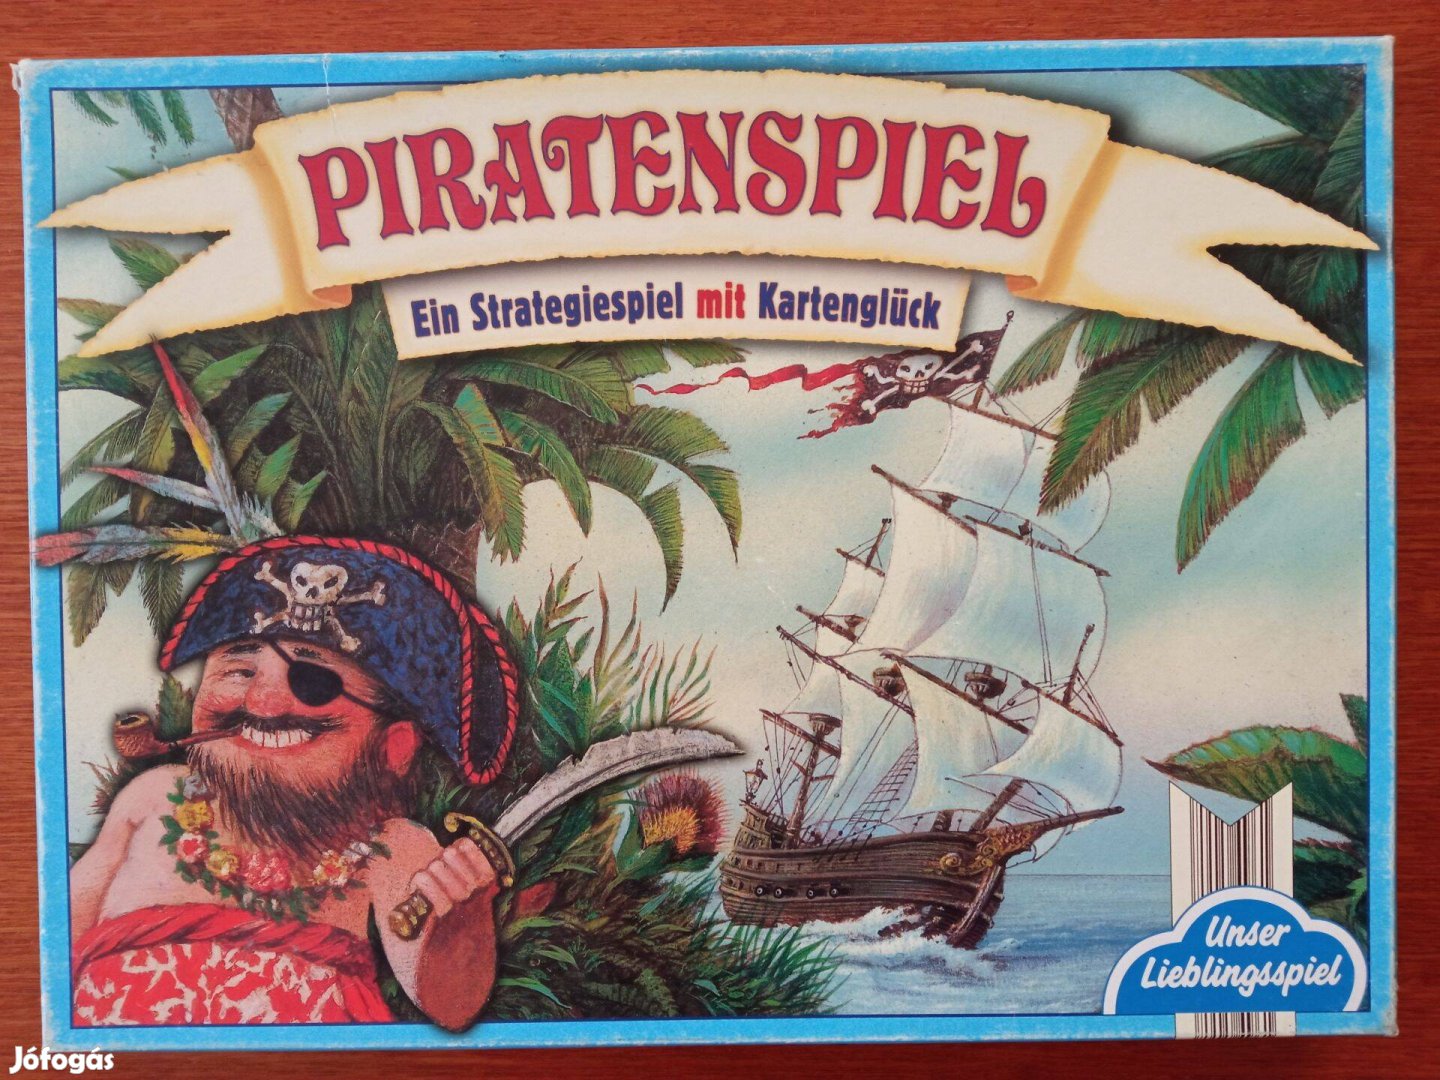 Piratenspiel társasjáték